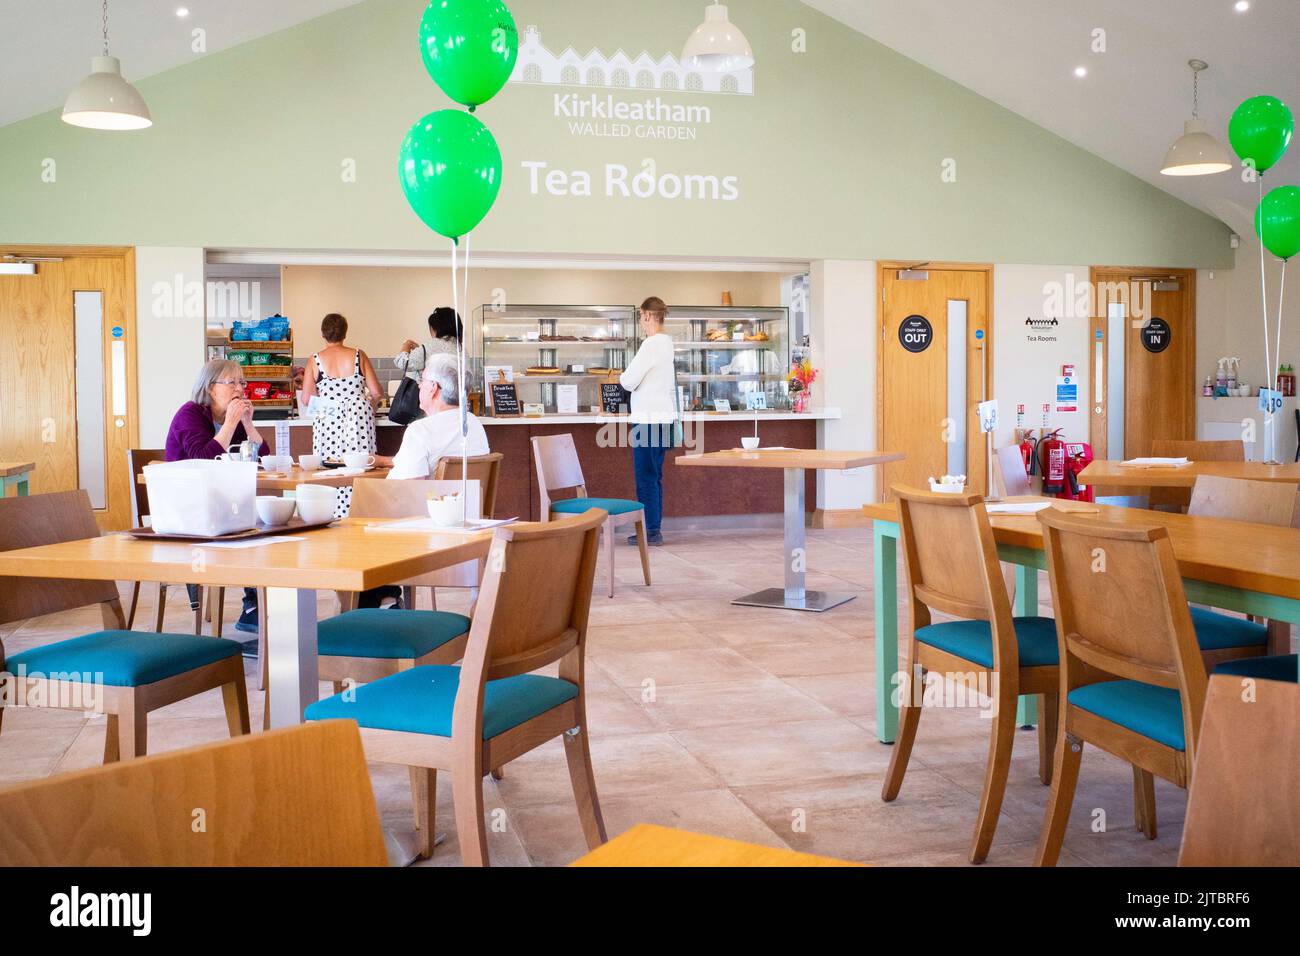 Kirkleatham Teesaal mit grünen Ballonen zur Feier des 1.. Jahrestages der ersten Eröffnung Stockfoto